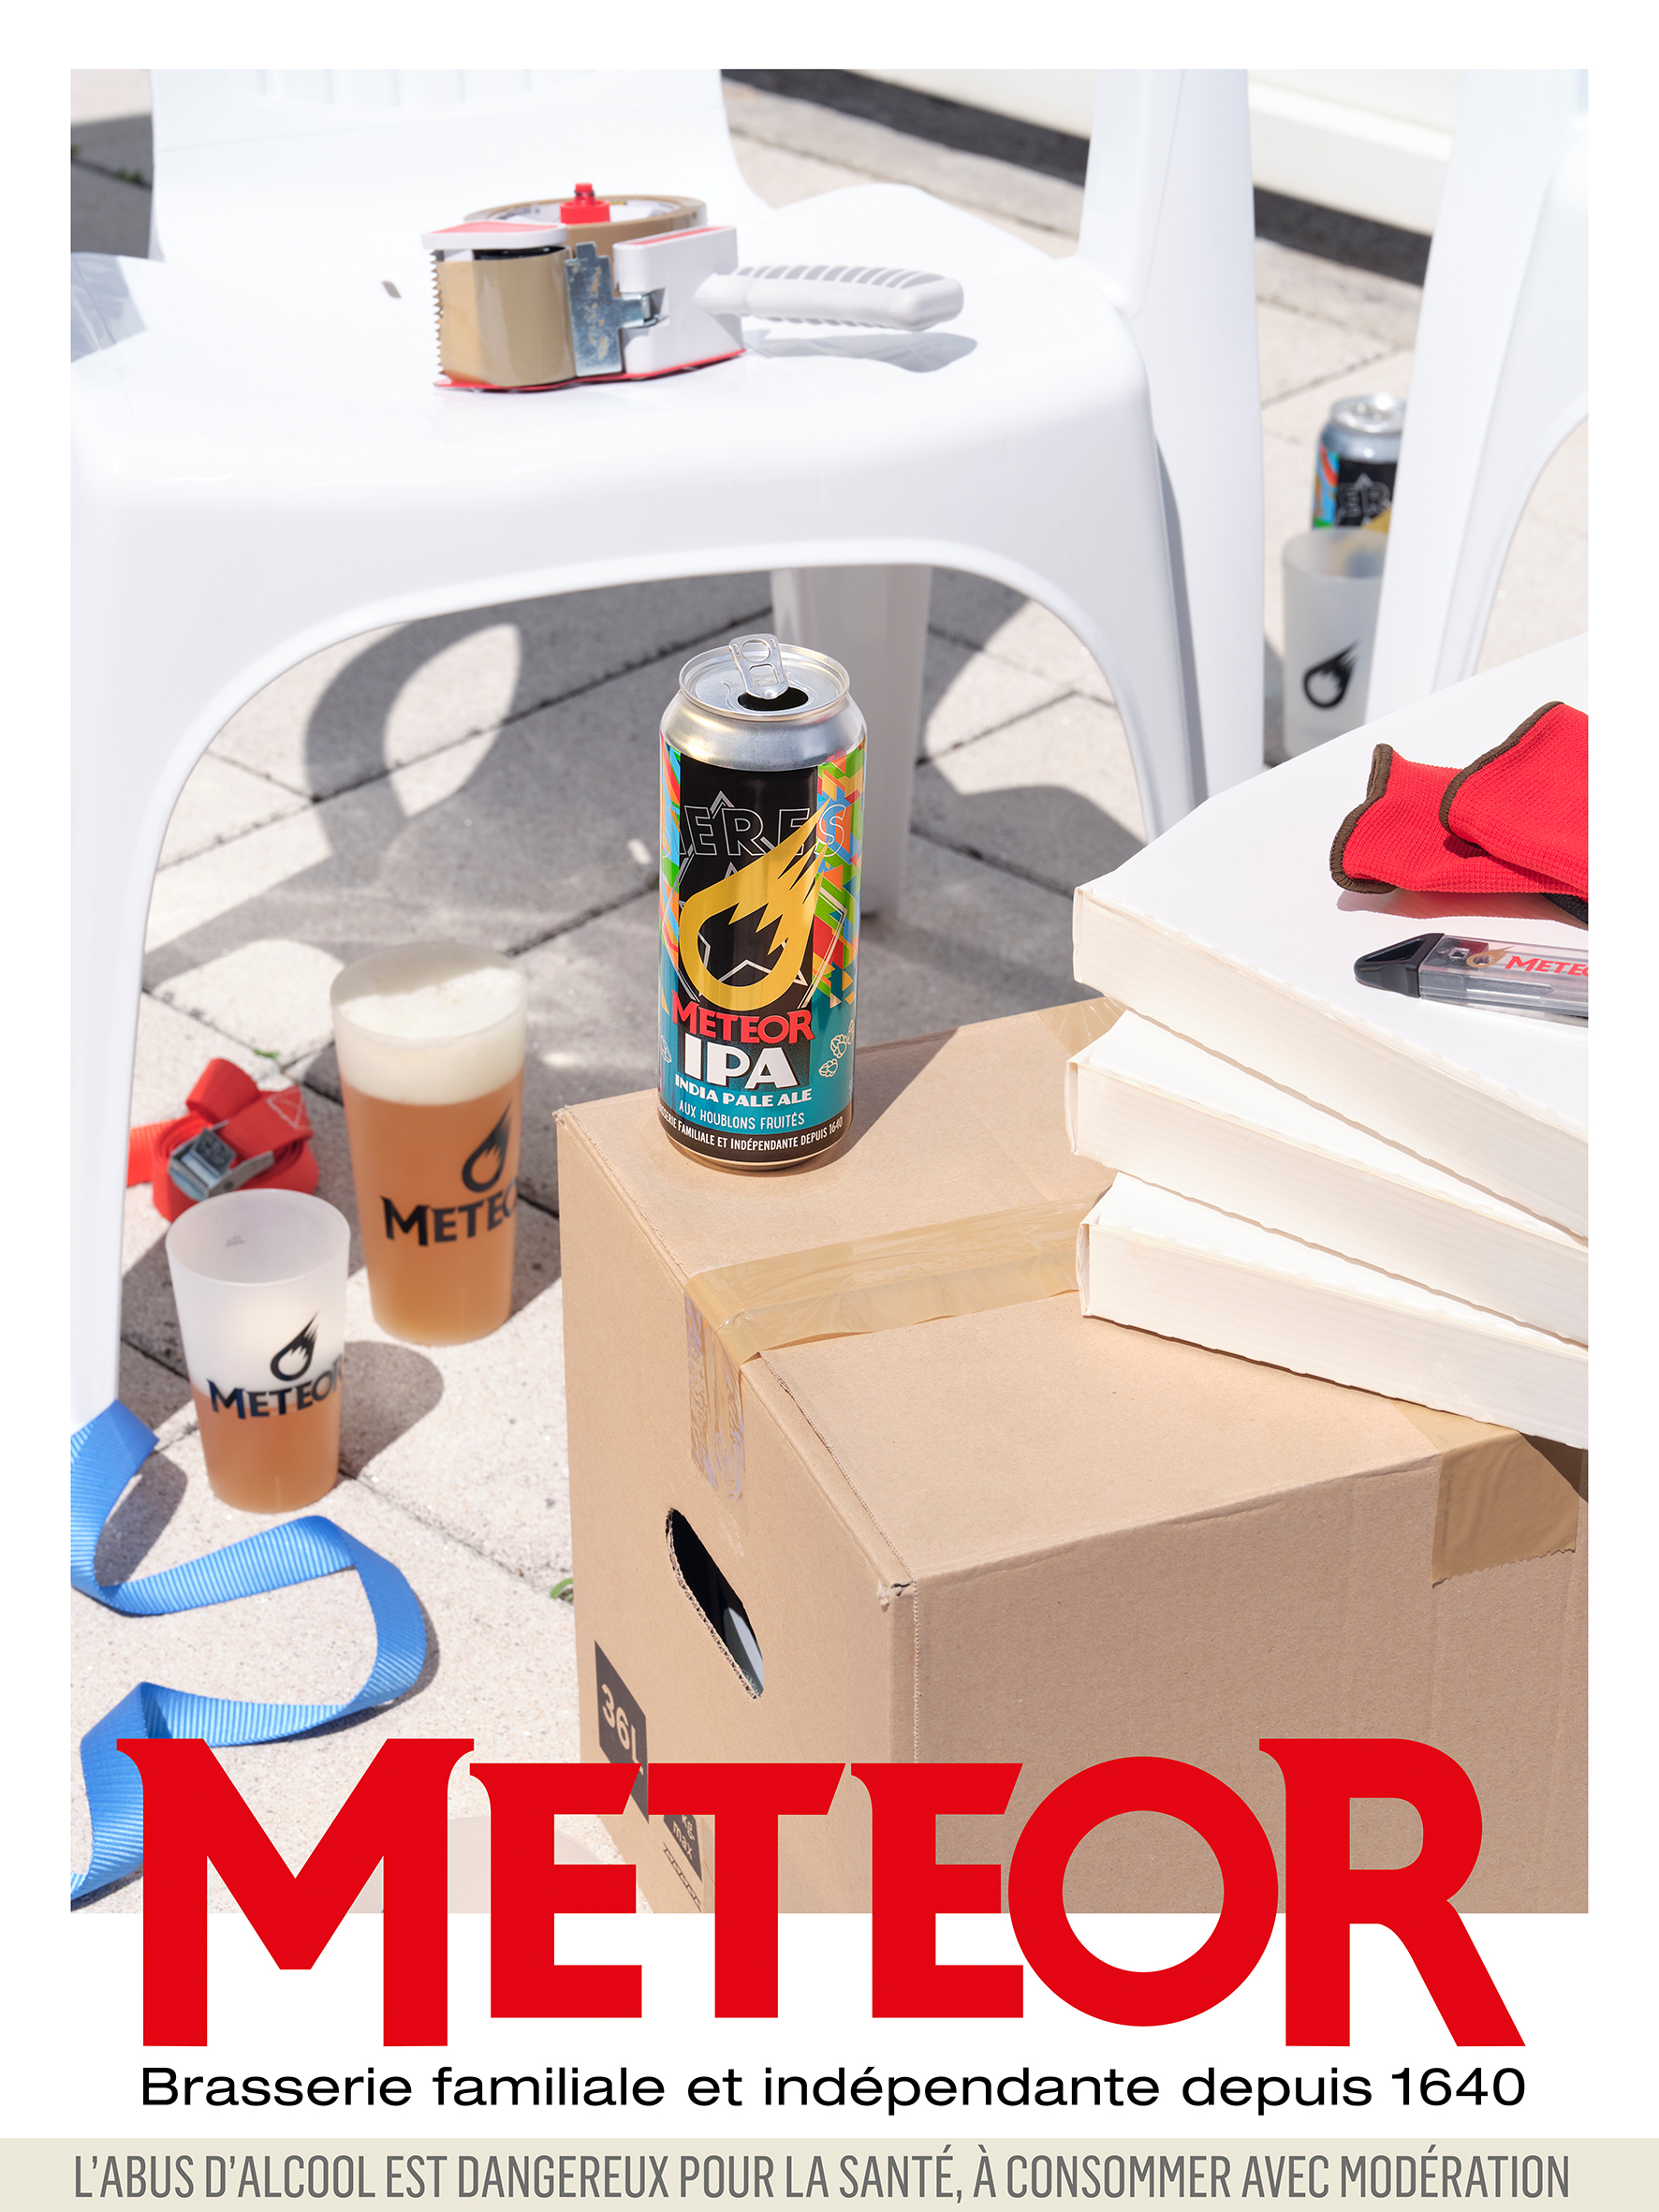 1ère image de la nouvelle campagne de la marque Meteor, publiée dans le Parisien